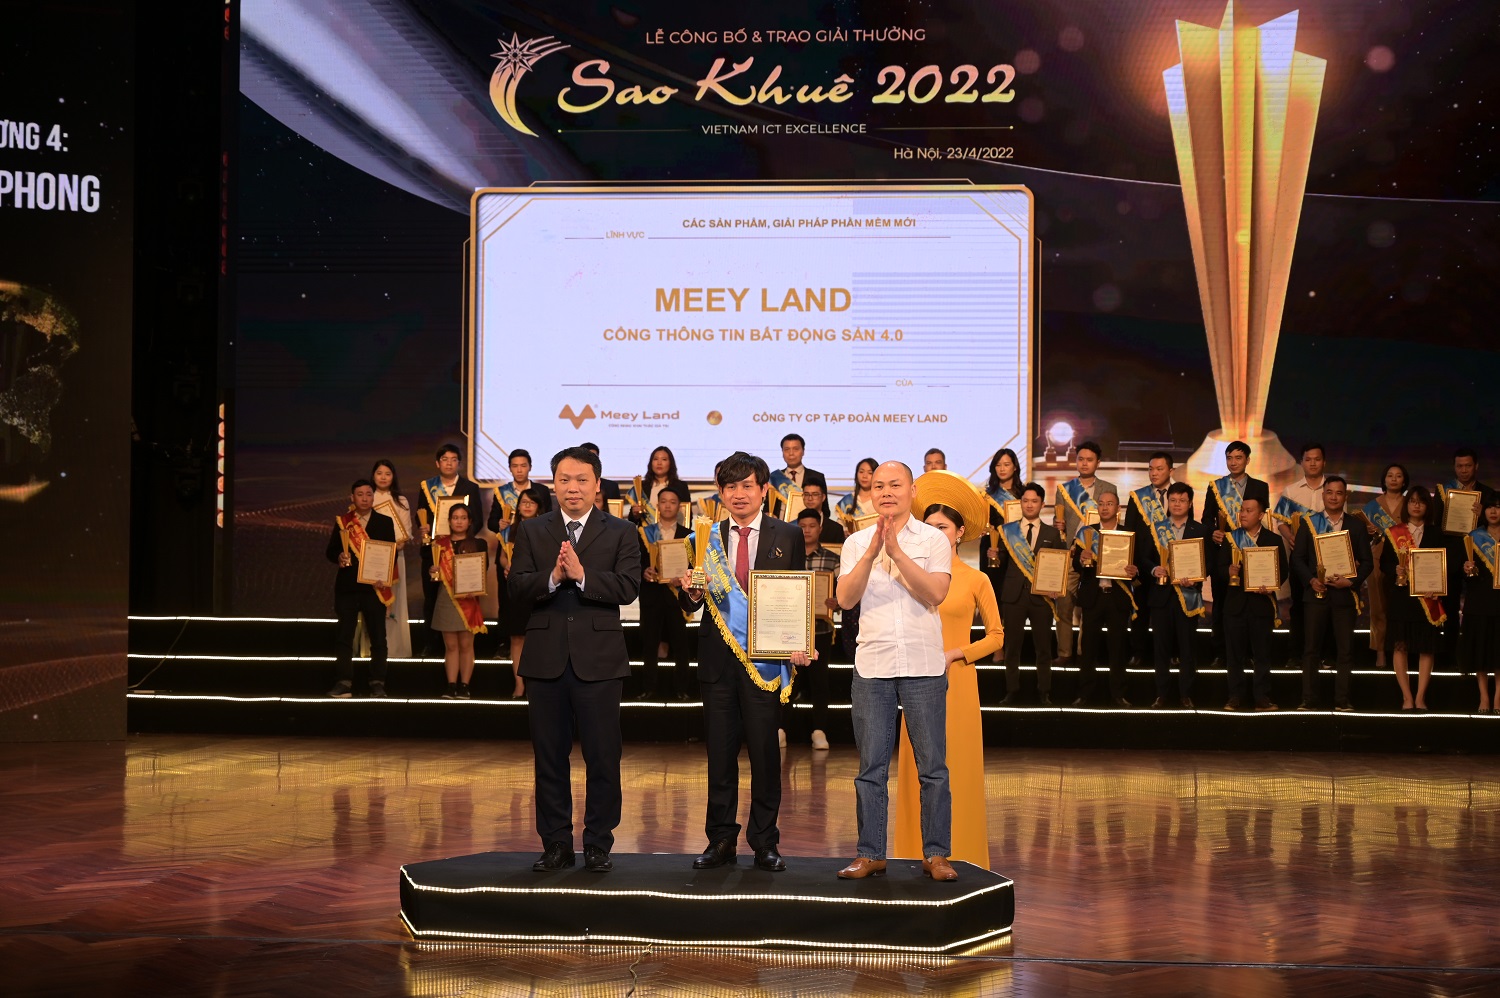 Meey Land nhận Giải thưởng Sao Khuê 2022 cho sản phẩm Cổng thông tin bất động sản 4.0.